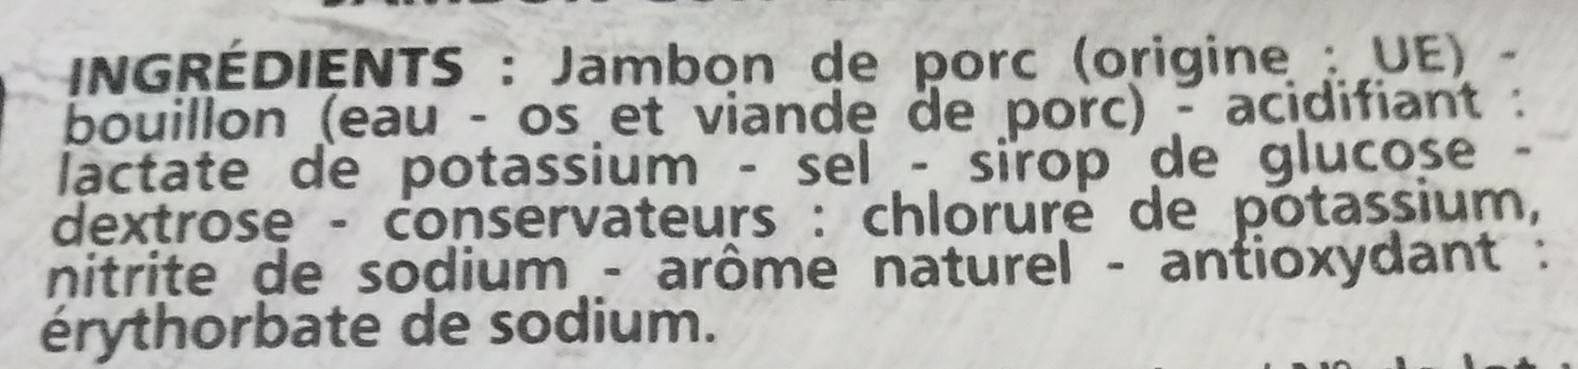 Jambon de Paris découenné dégraissé -25% de sel par rapport à la moyenne des jambons cuits choix du marché - Ingredients - fr